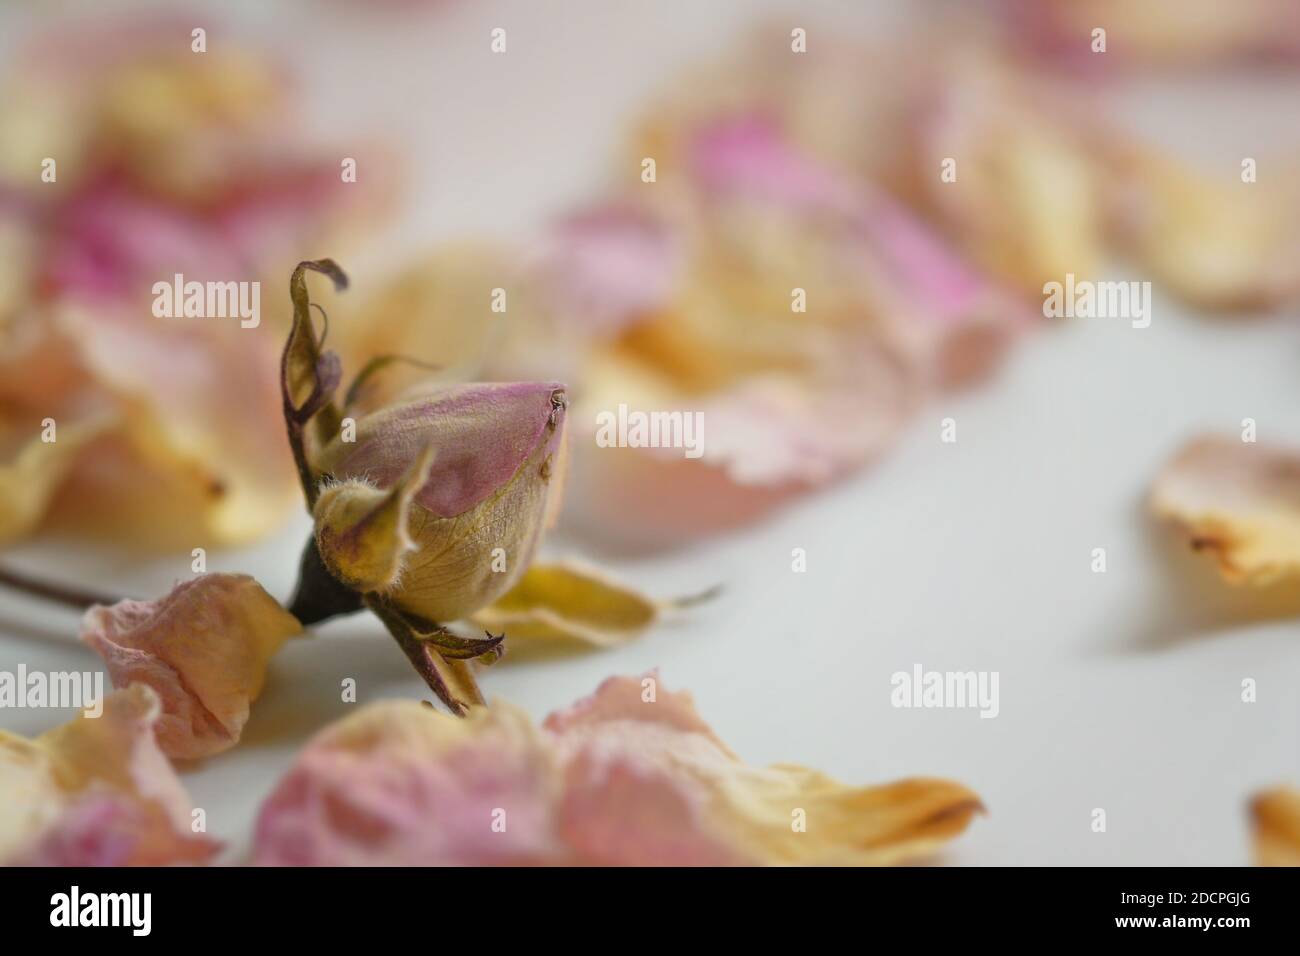 Germoglio di rosa appassito caduto tra petali secchi in rosa e giallo su un tavolo bianco, primo piano con spazio di copia, fuoco selezionato, profondità di campo molto stretta Foto Stock